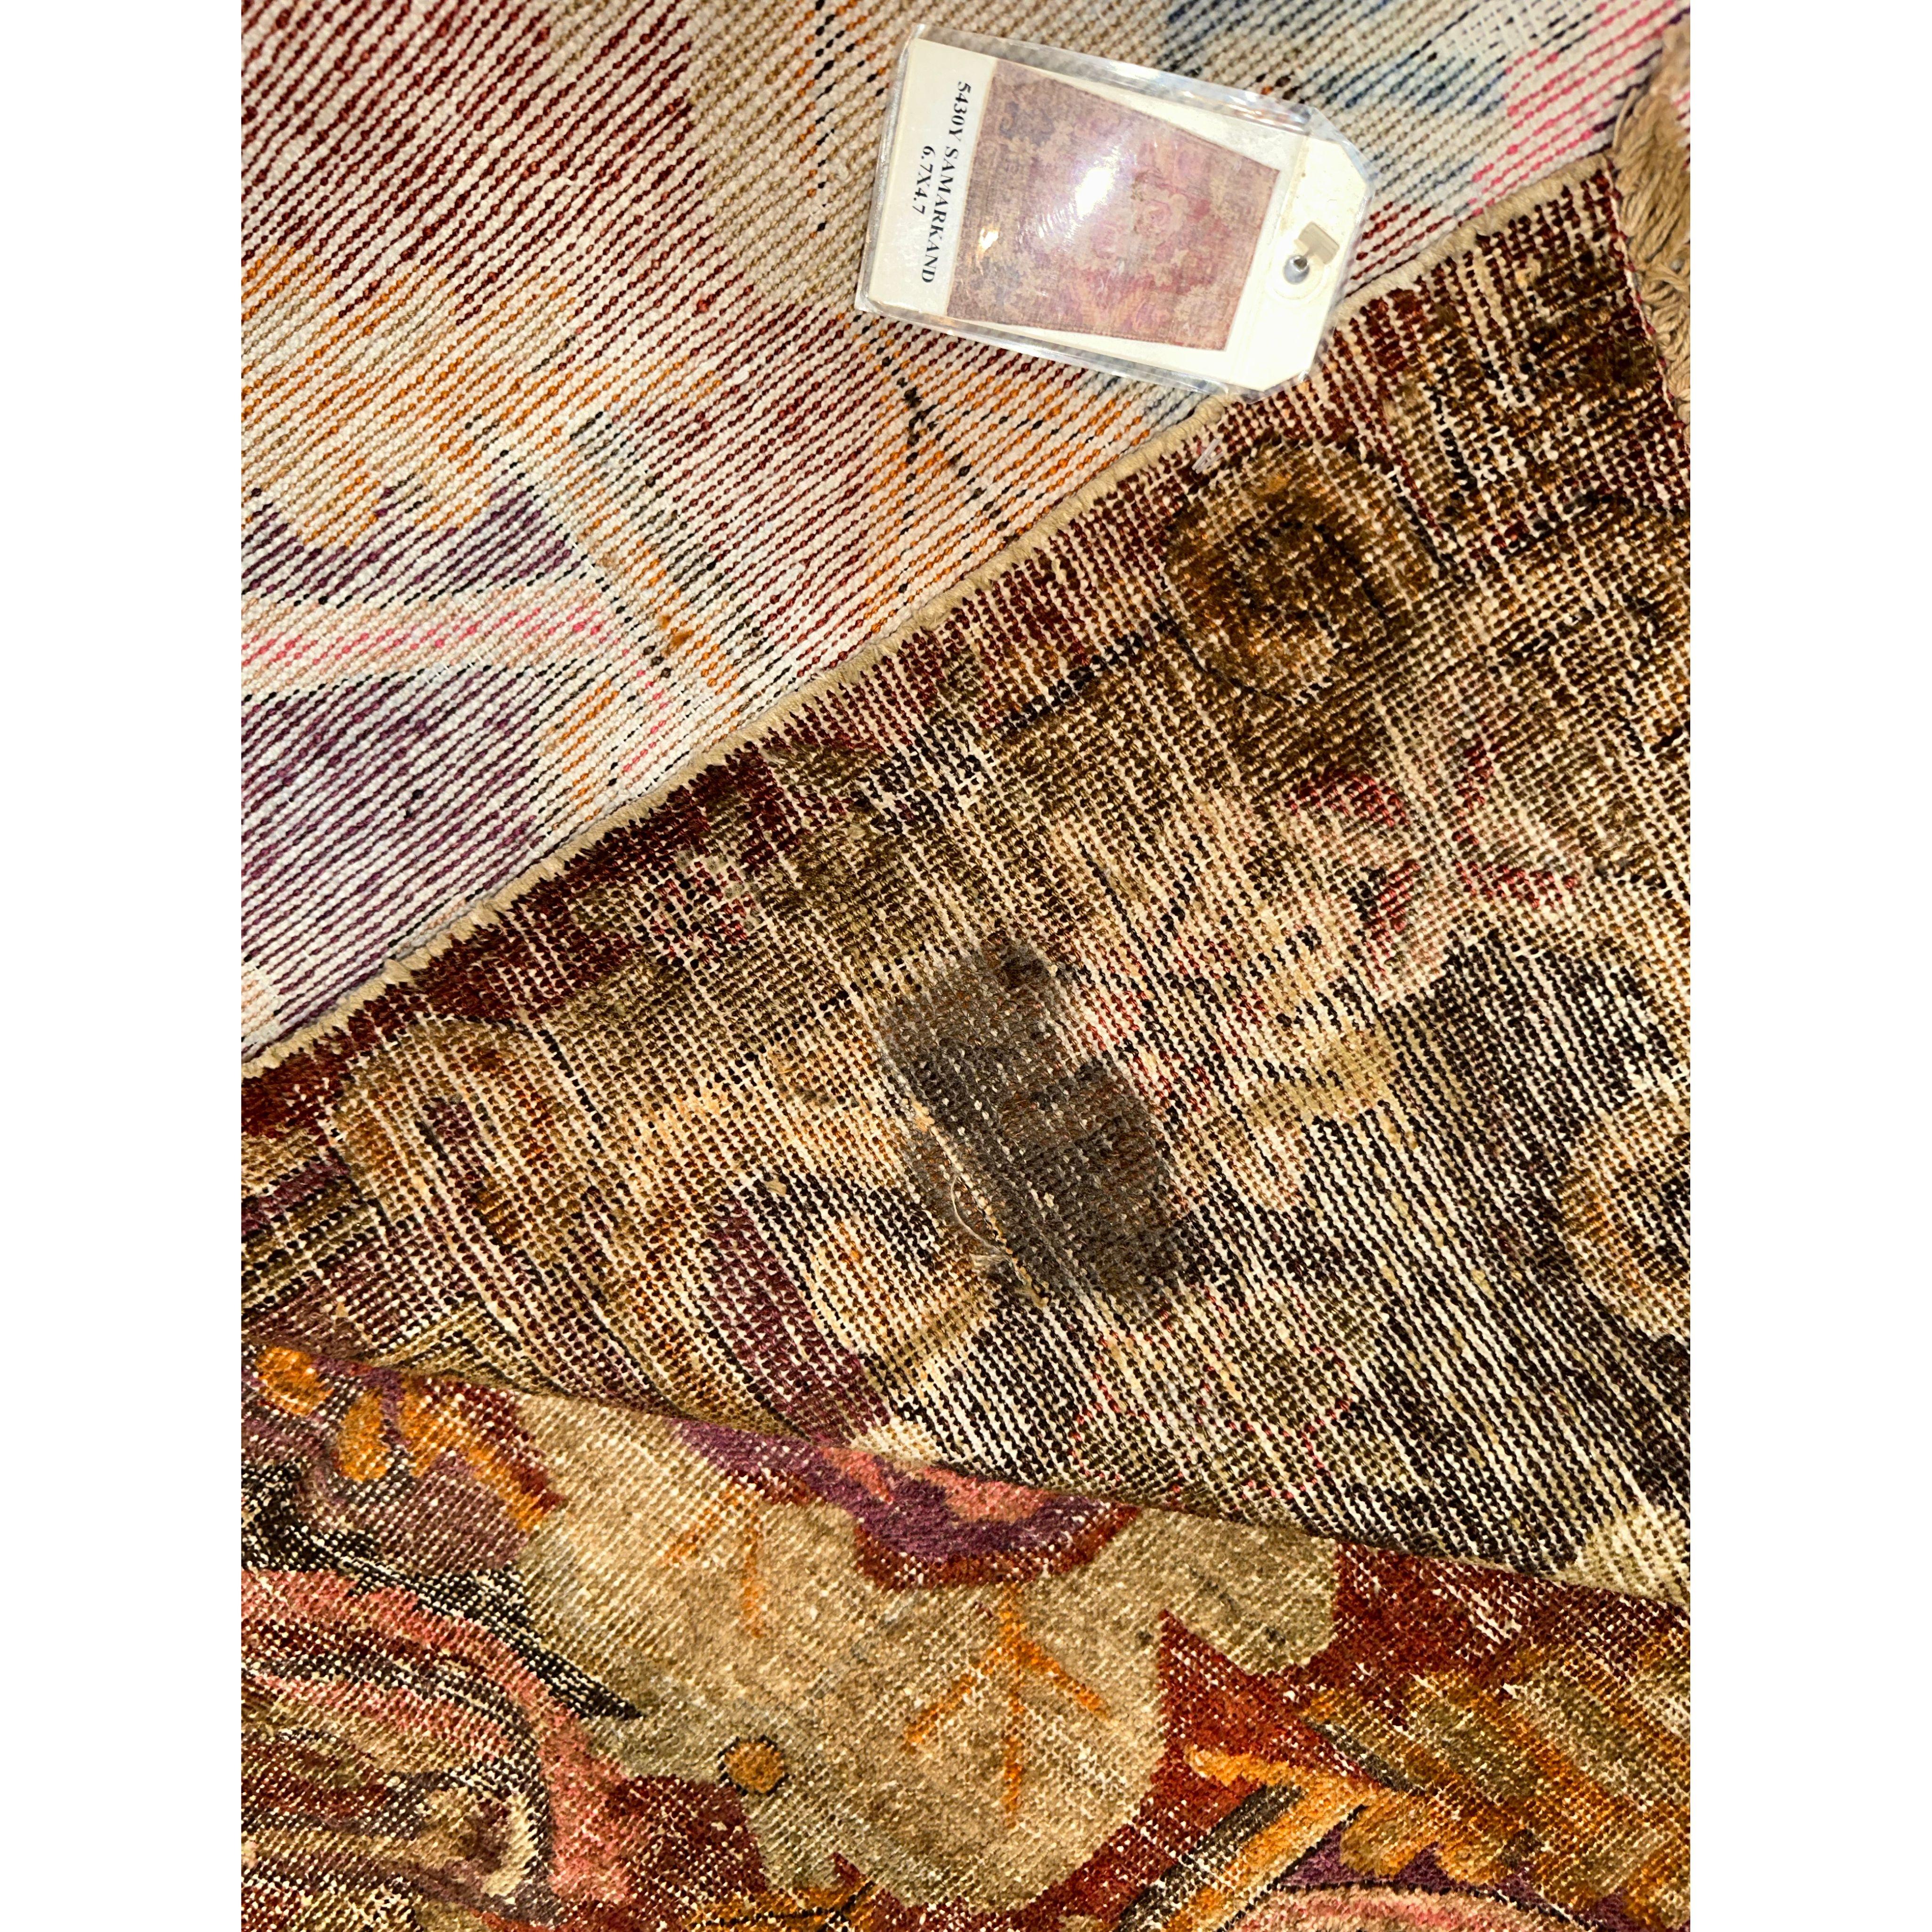 Antike Samarkand-Teppiche: Die Wüstenoase Khotan war eine wichtige Station auf der Seidenstraße. Die Einwohner von Khotan waren erfahrene Teppichweber, die hochwertige antike Teppiche für den internen Gebrauch und den Handel herstellten.